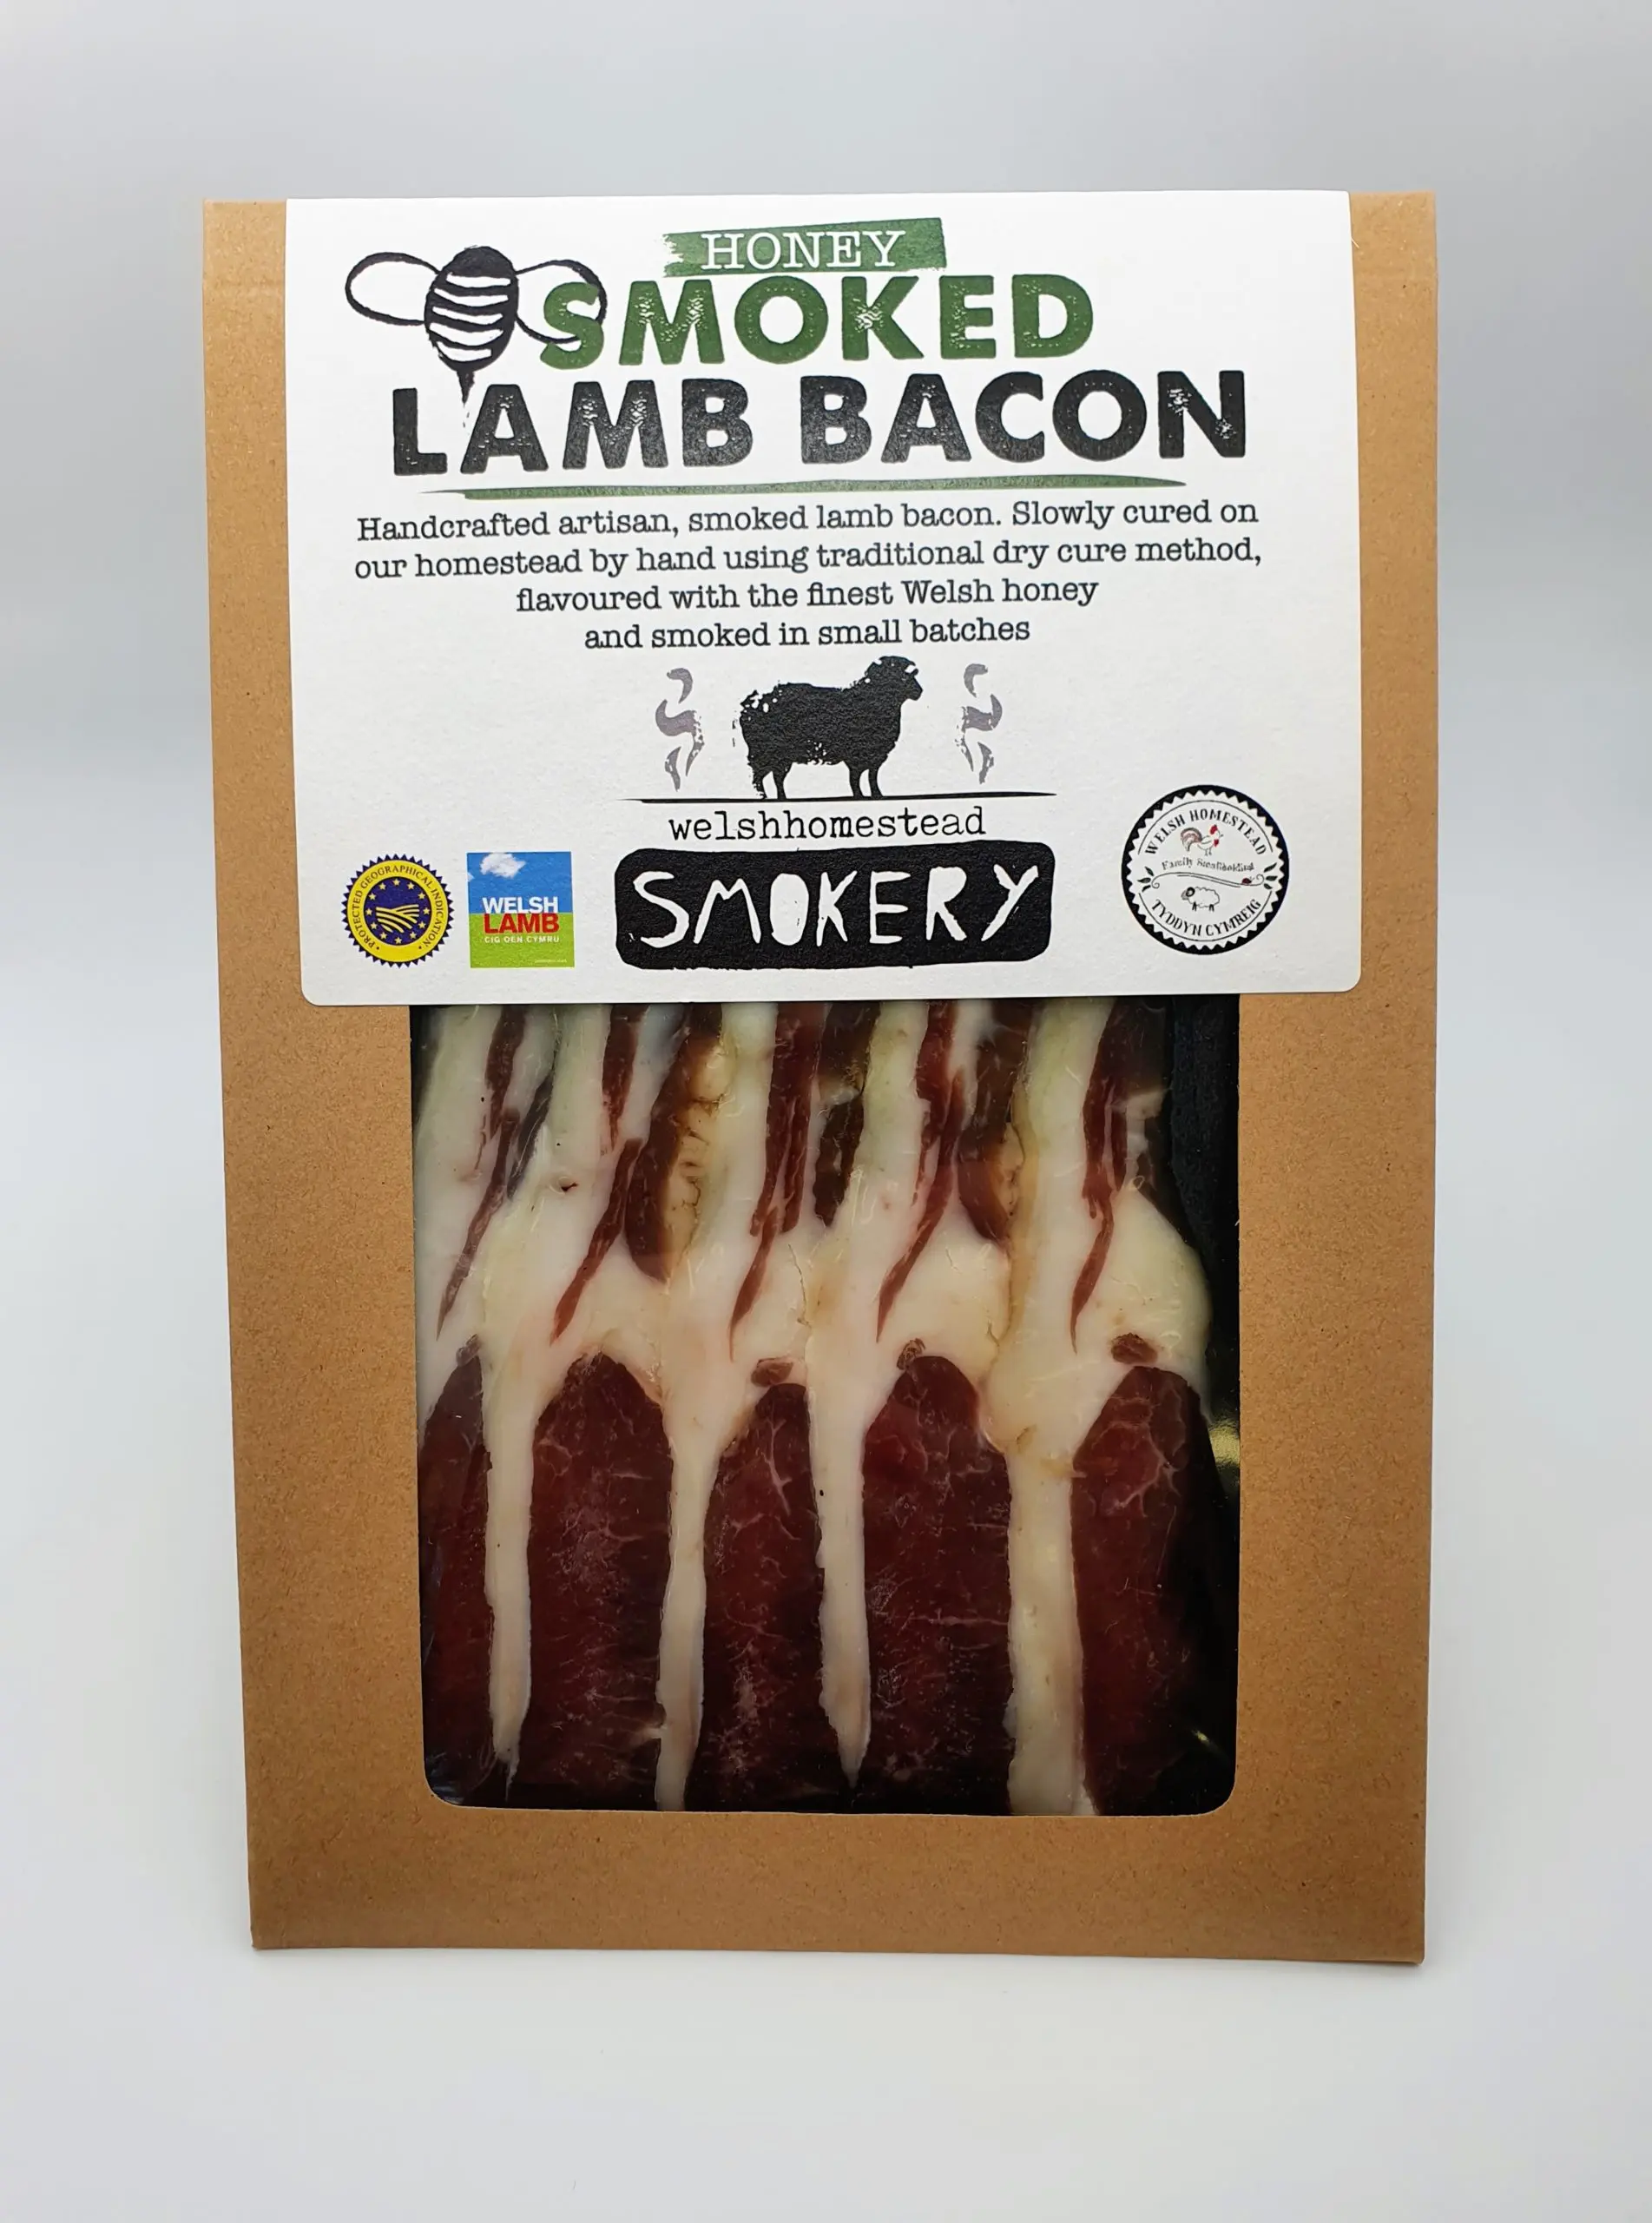 smoked lamb bacon - How do you eat lamb bacon